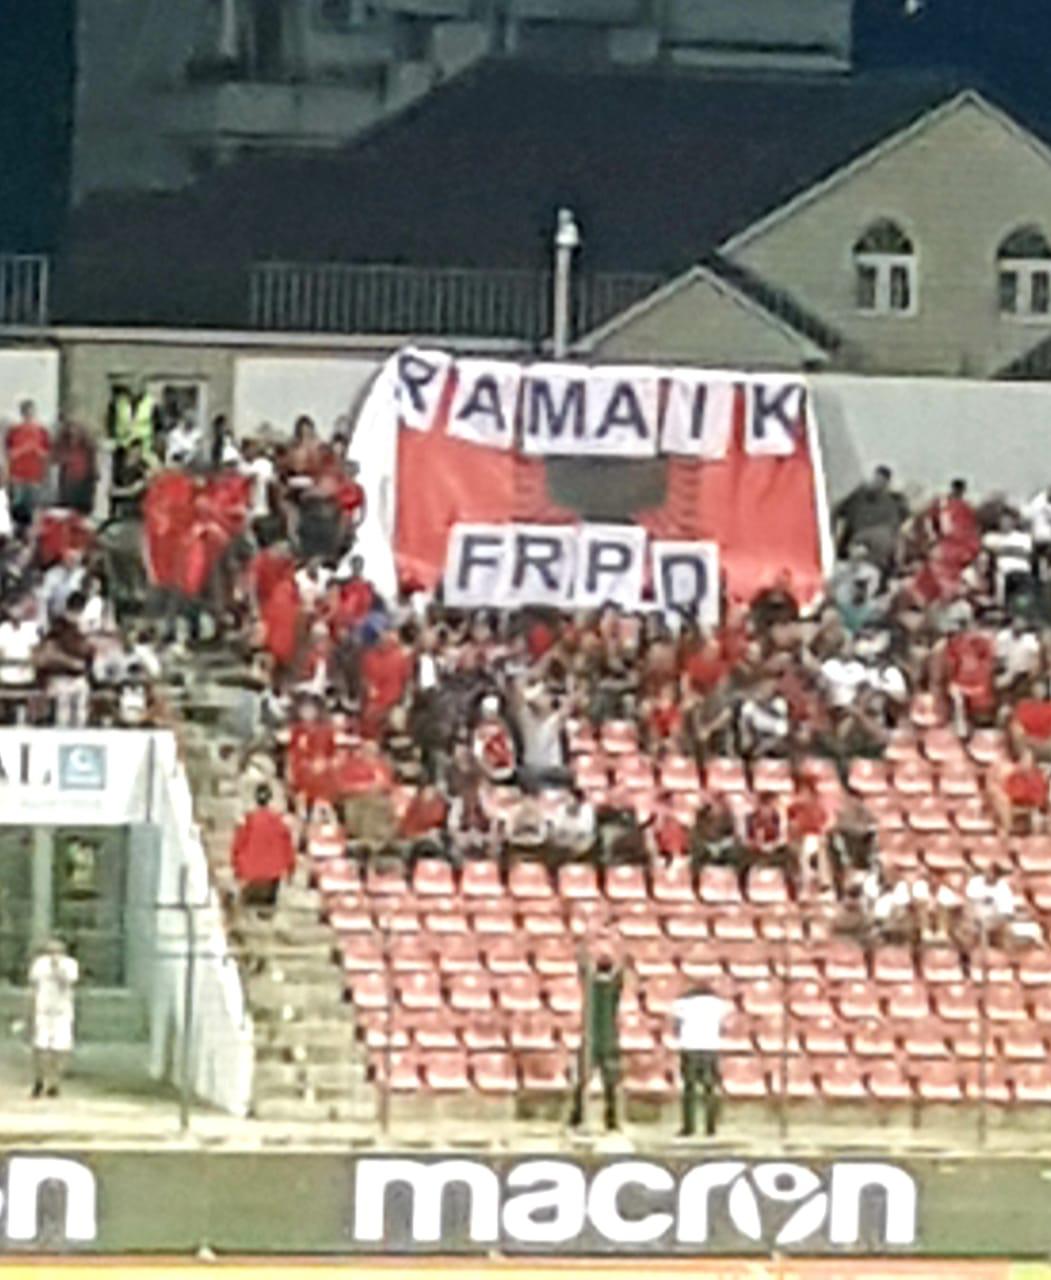 Hapen banderolat në stadium: “Rama ik” në ndeshjen Shqipëri-Izrael